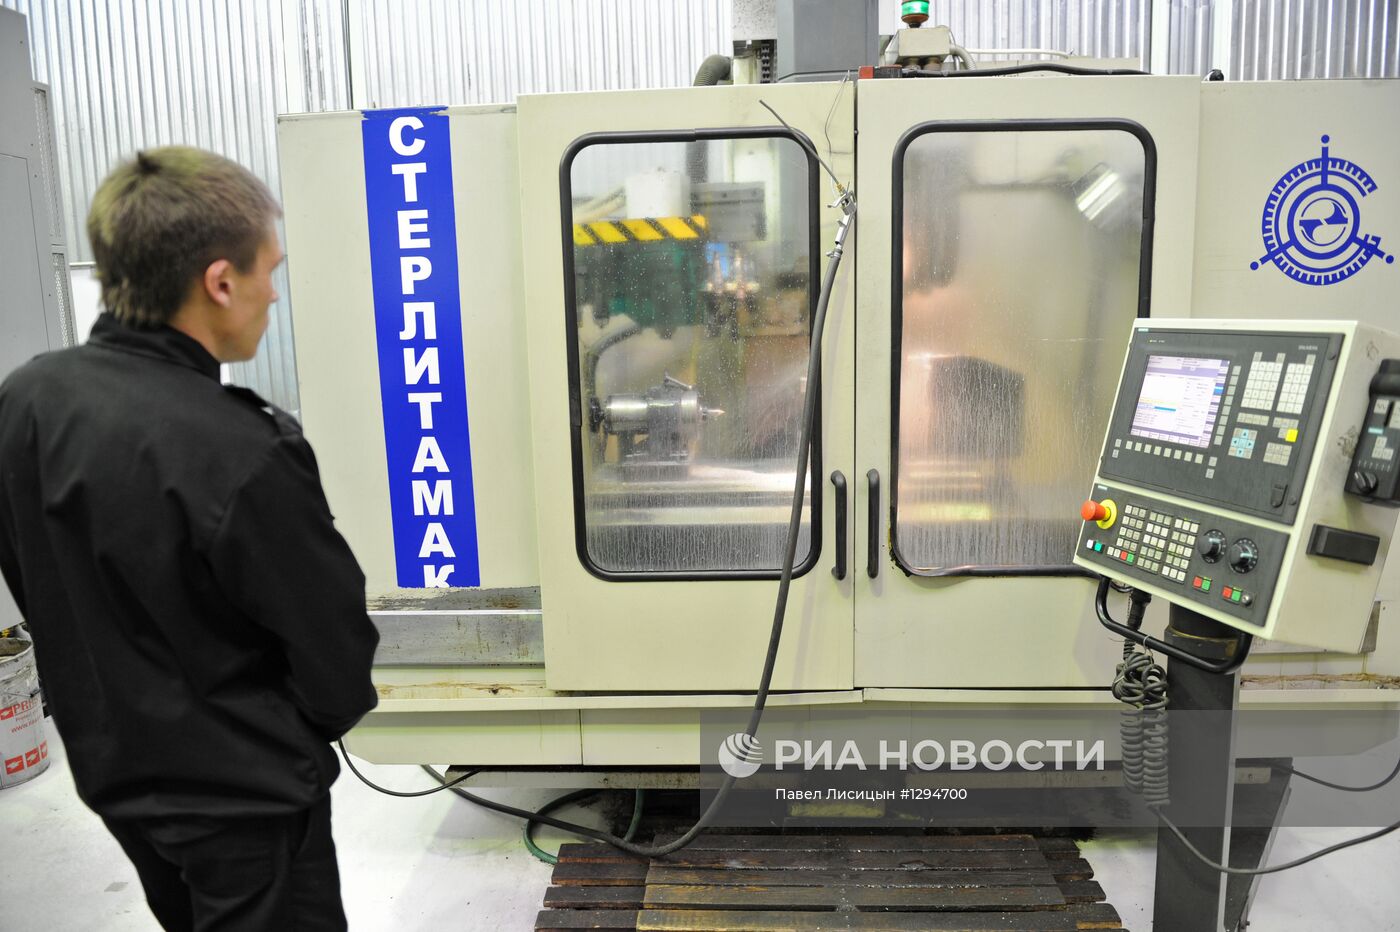 Работа Уральского турбинного завода